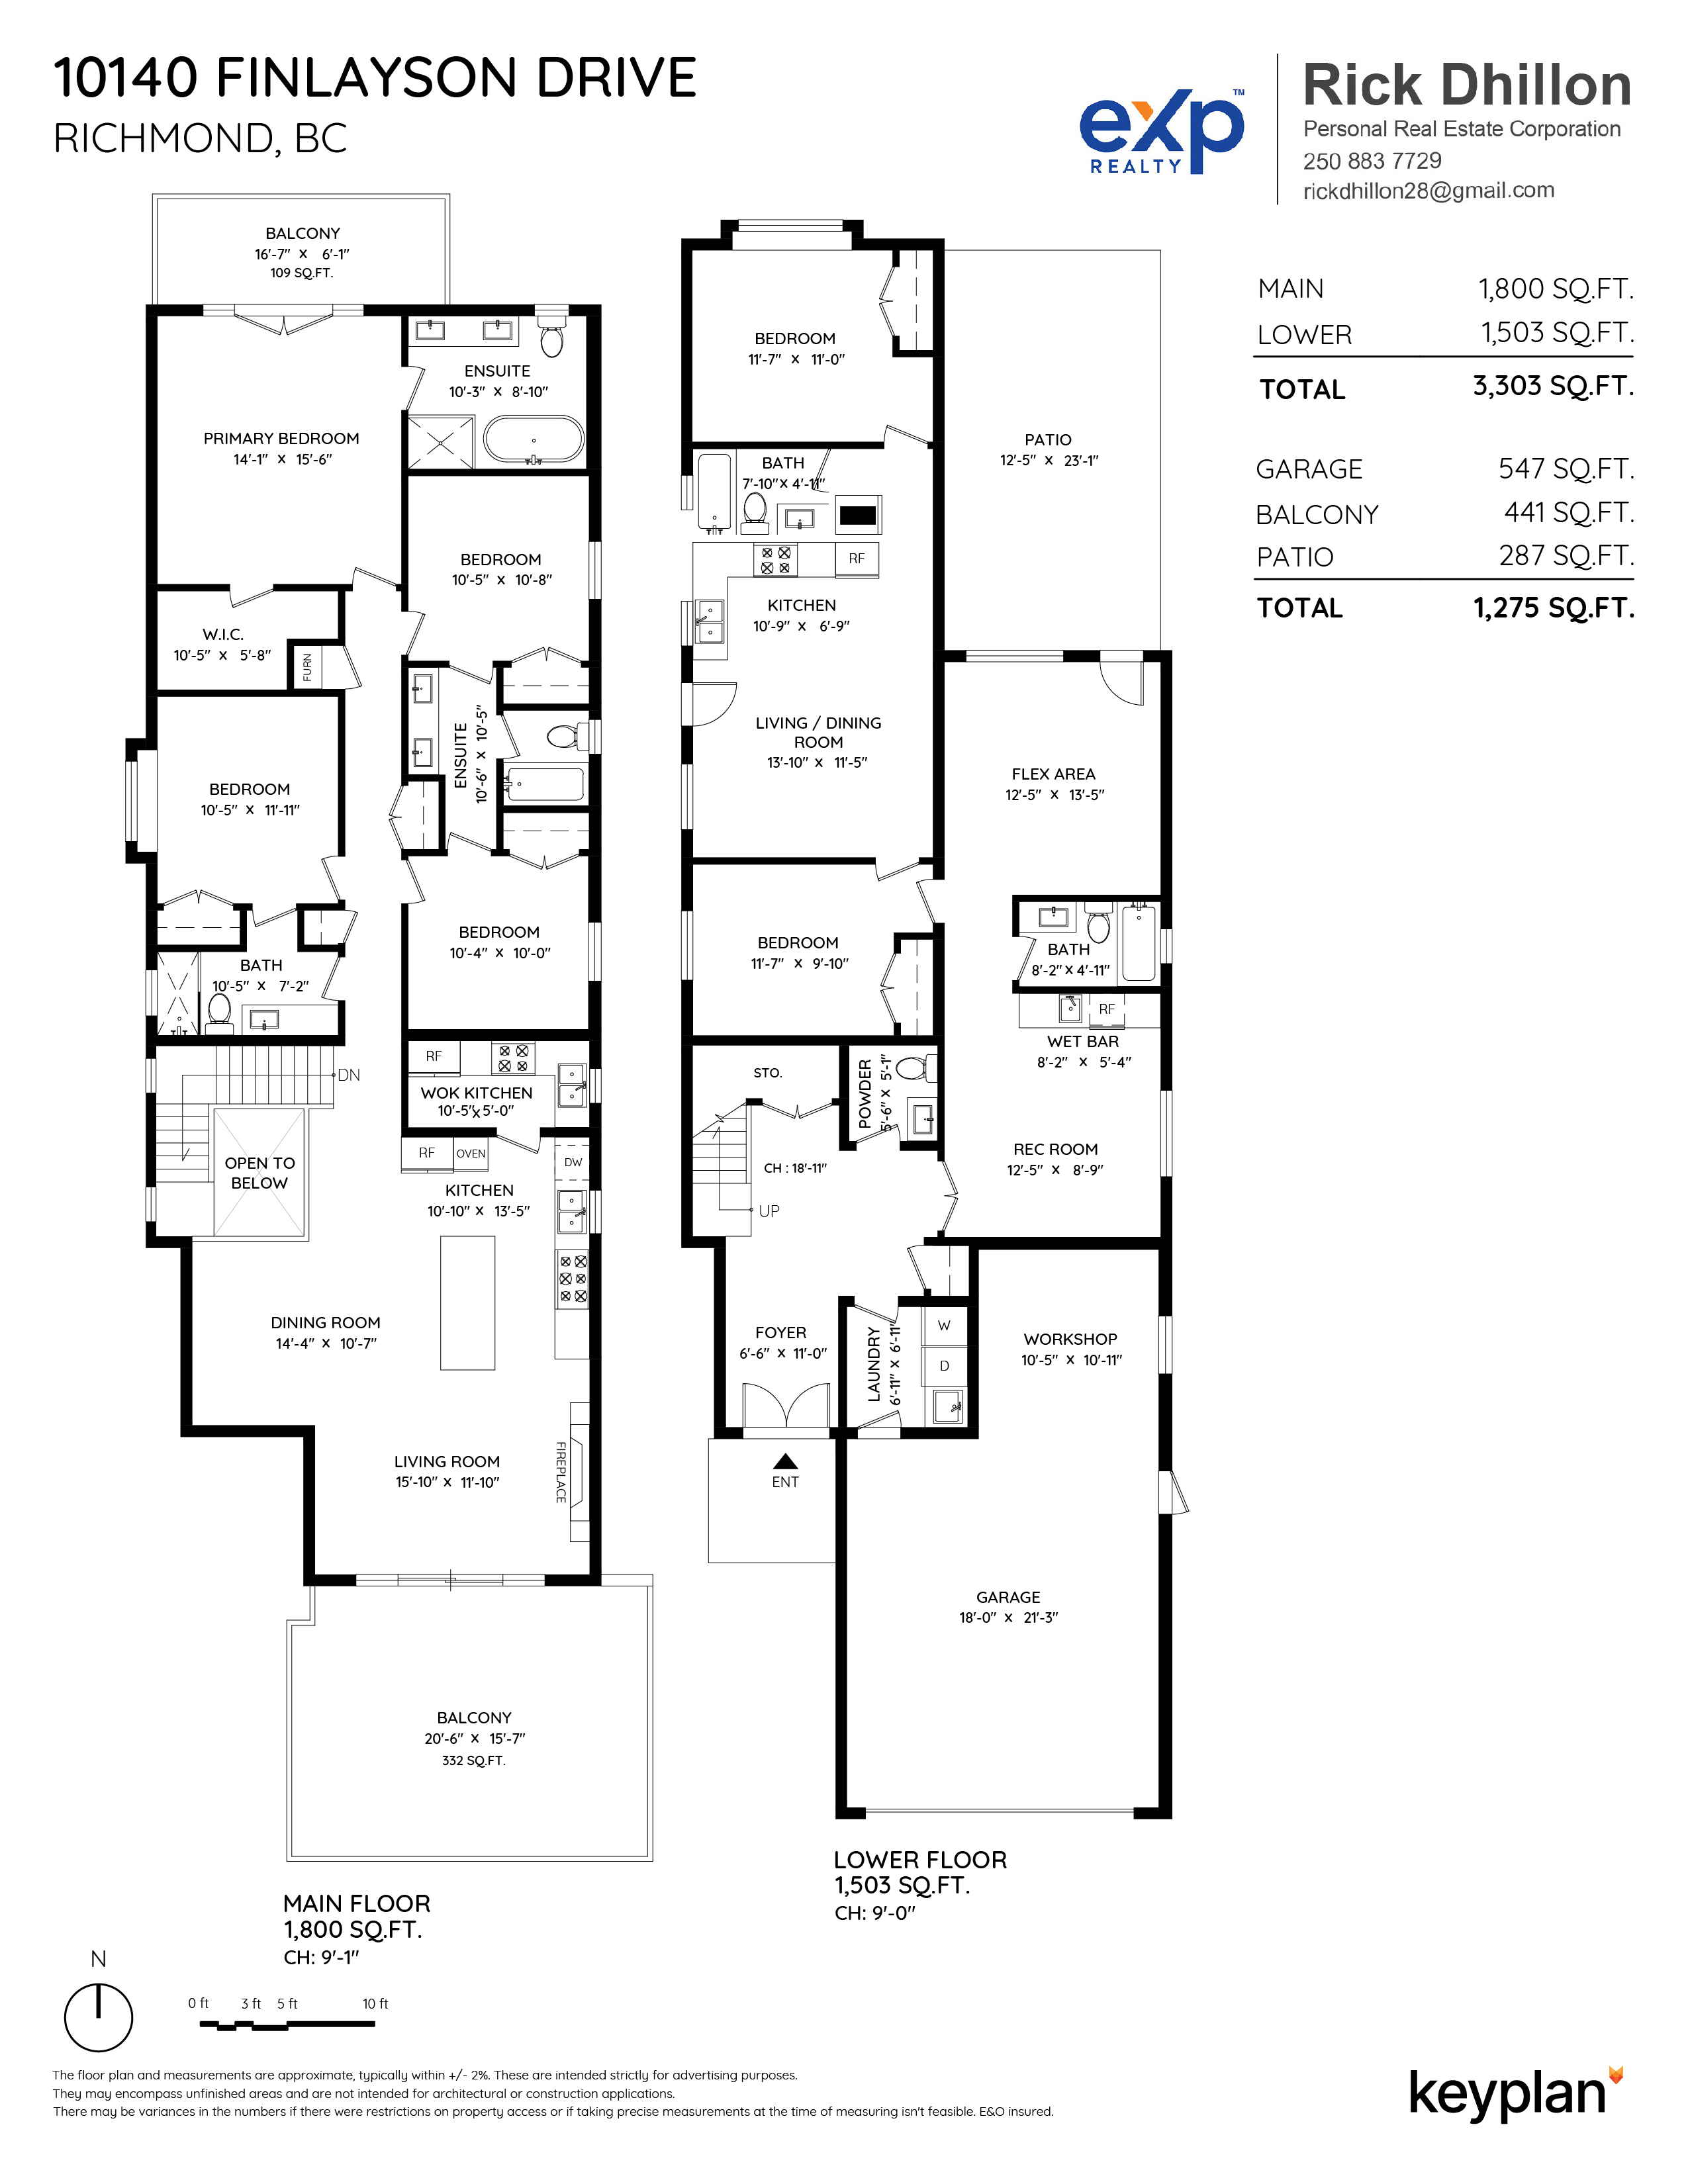 Rick Dhillon - 10140 Finlayson Drive, Richmond, BC, Canada | Floor Plan 1